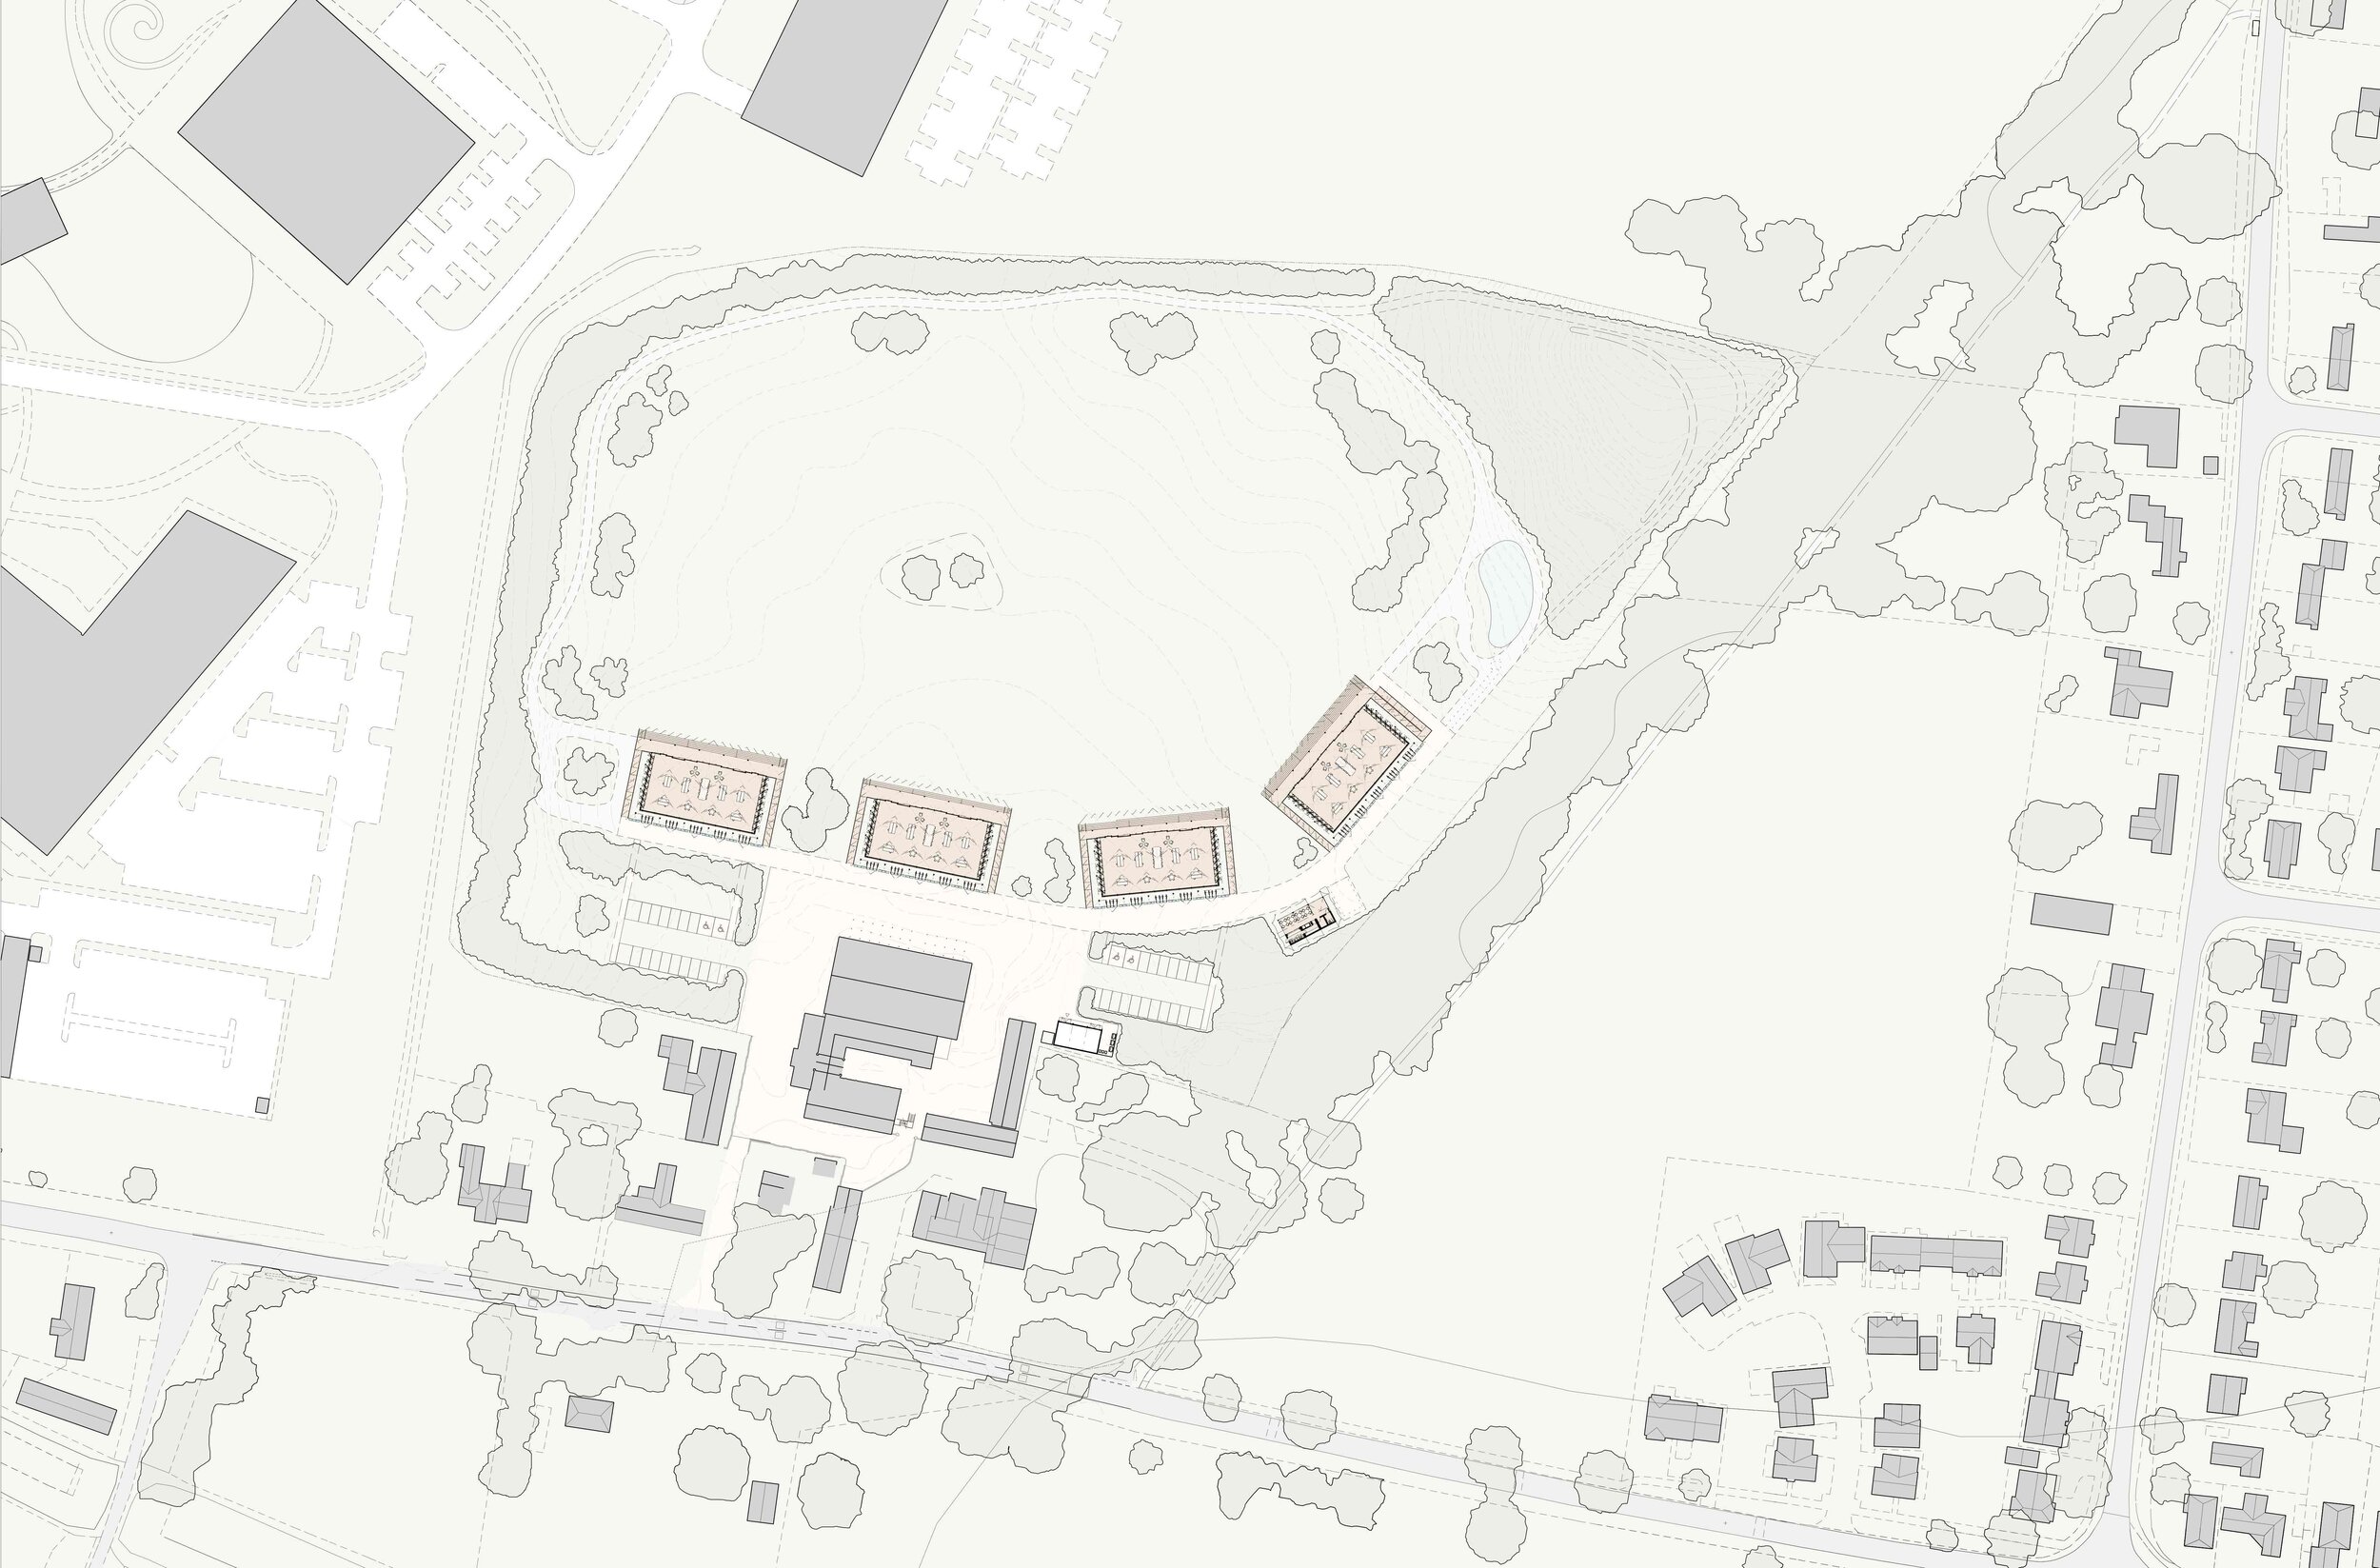 02---Proposed-ARCC-Campus-Site-Plan.jpg